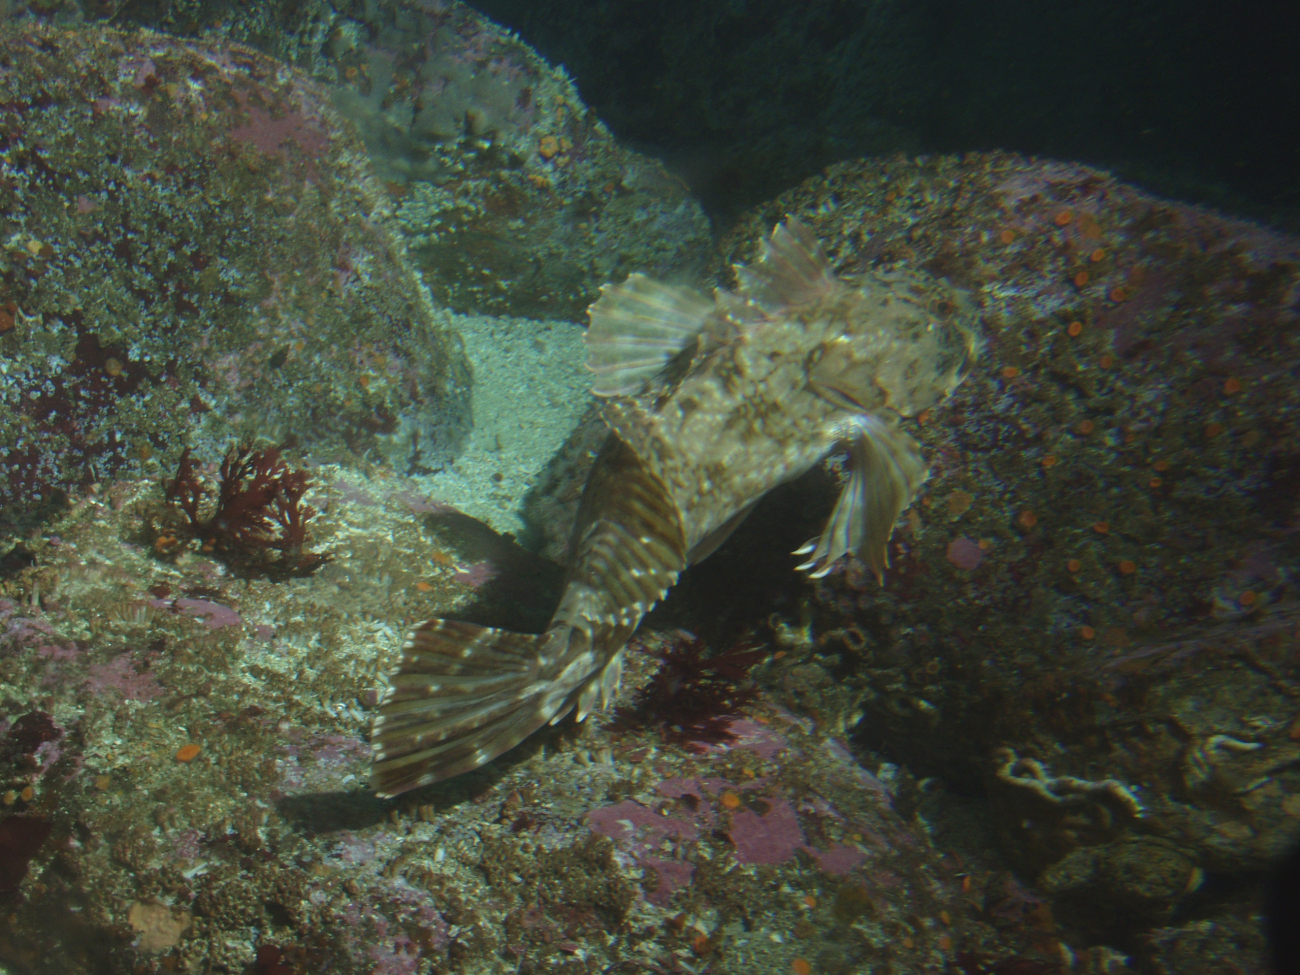 Cabezon (Scorpaenichthys marmoratus)at 25 meters depth